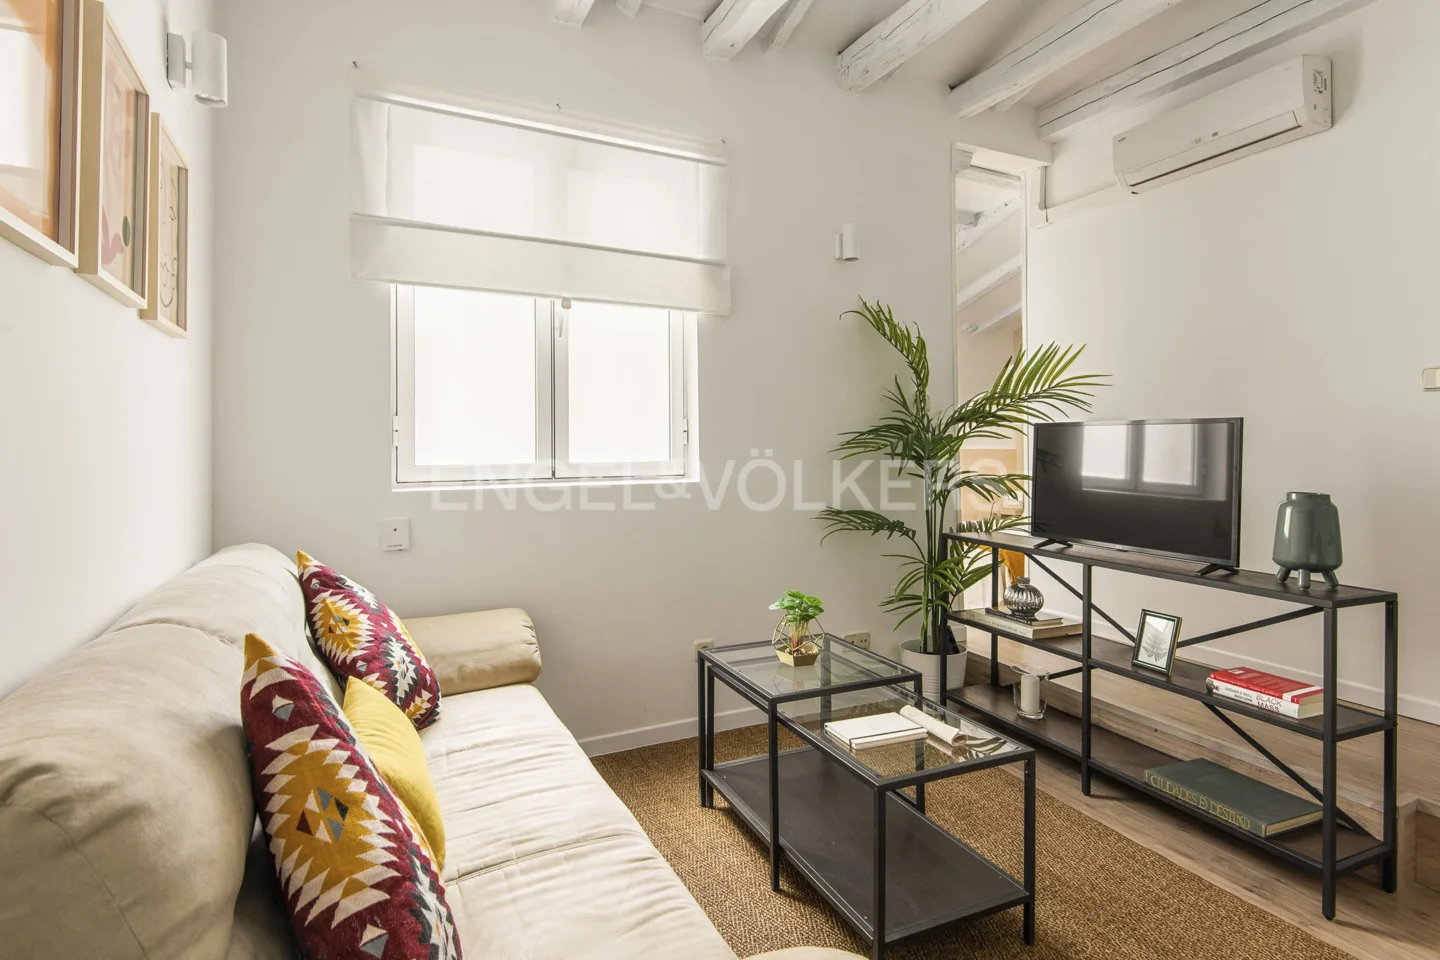 Confortable apartamento en calle Atocha en Alquiler